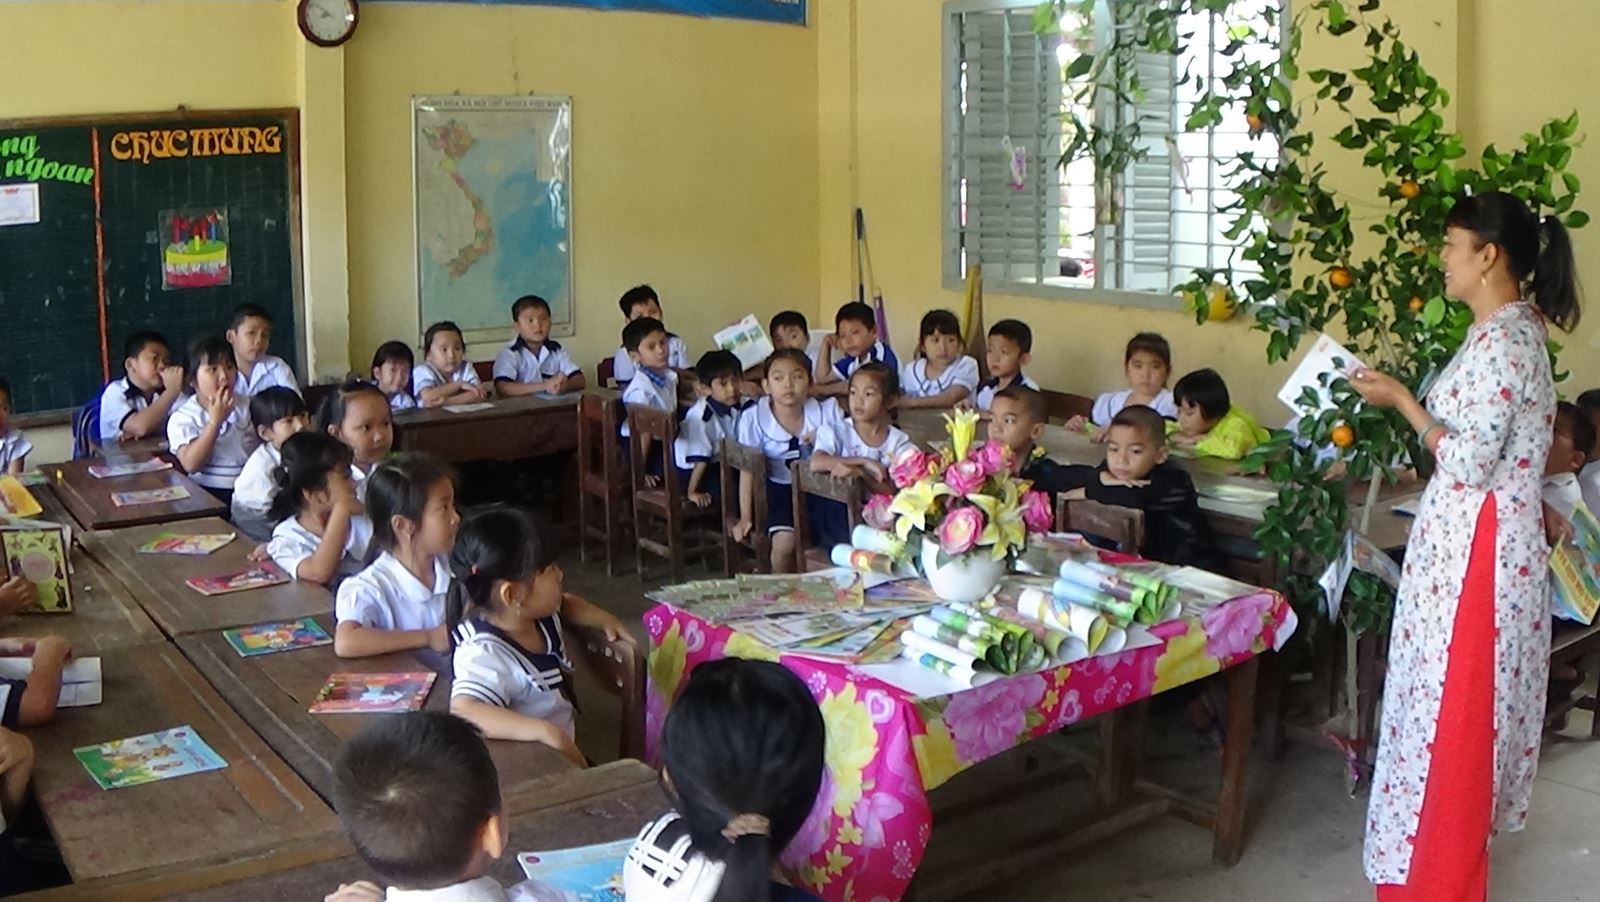 Thầy cô trong trái tim em: MÃI NHỚ VỀ CÔ _ Tác giả: Học sinh Nguyễn Mai Diệu Minh